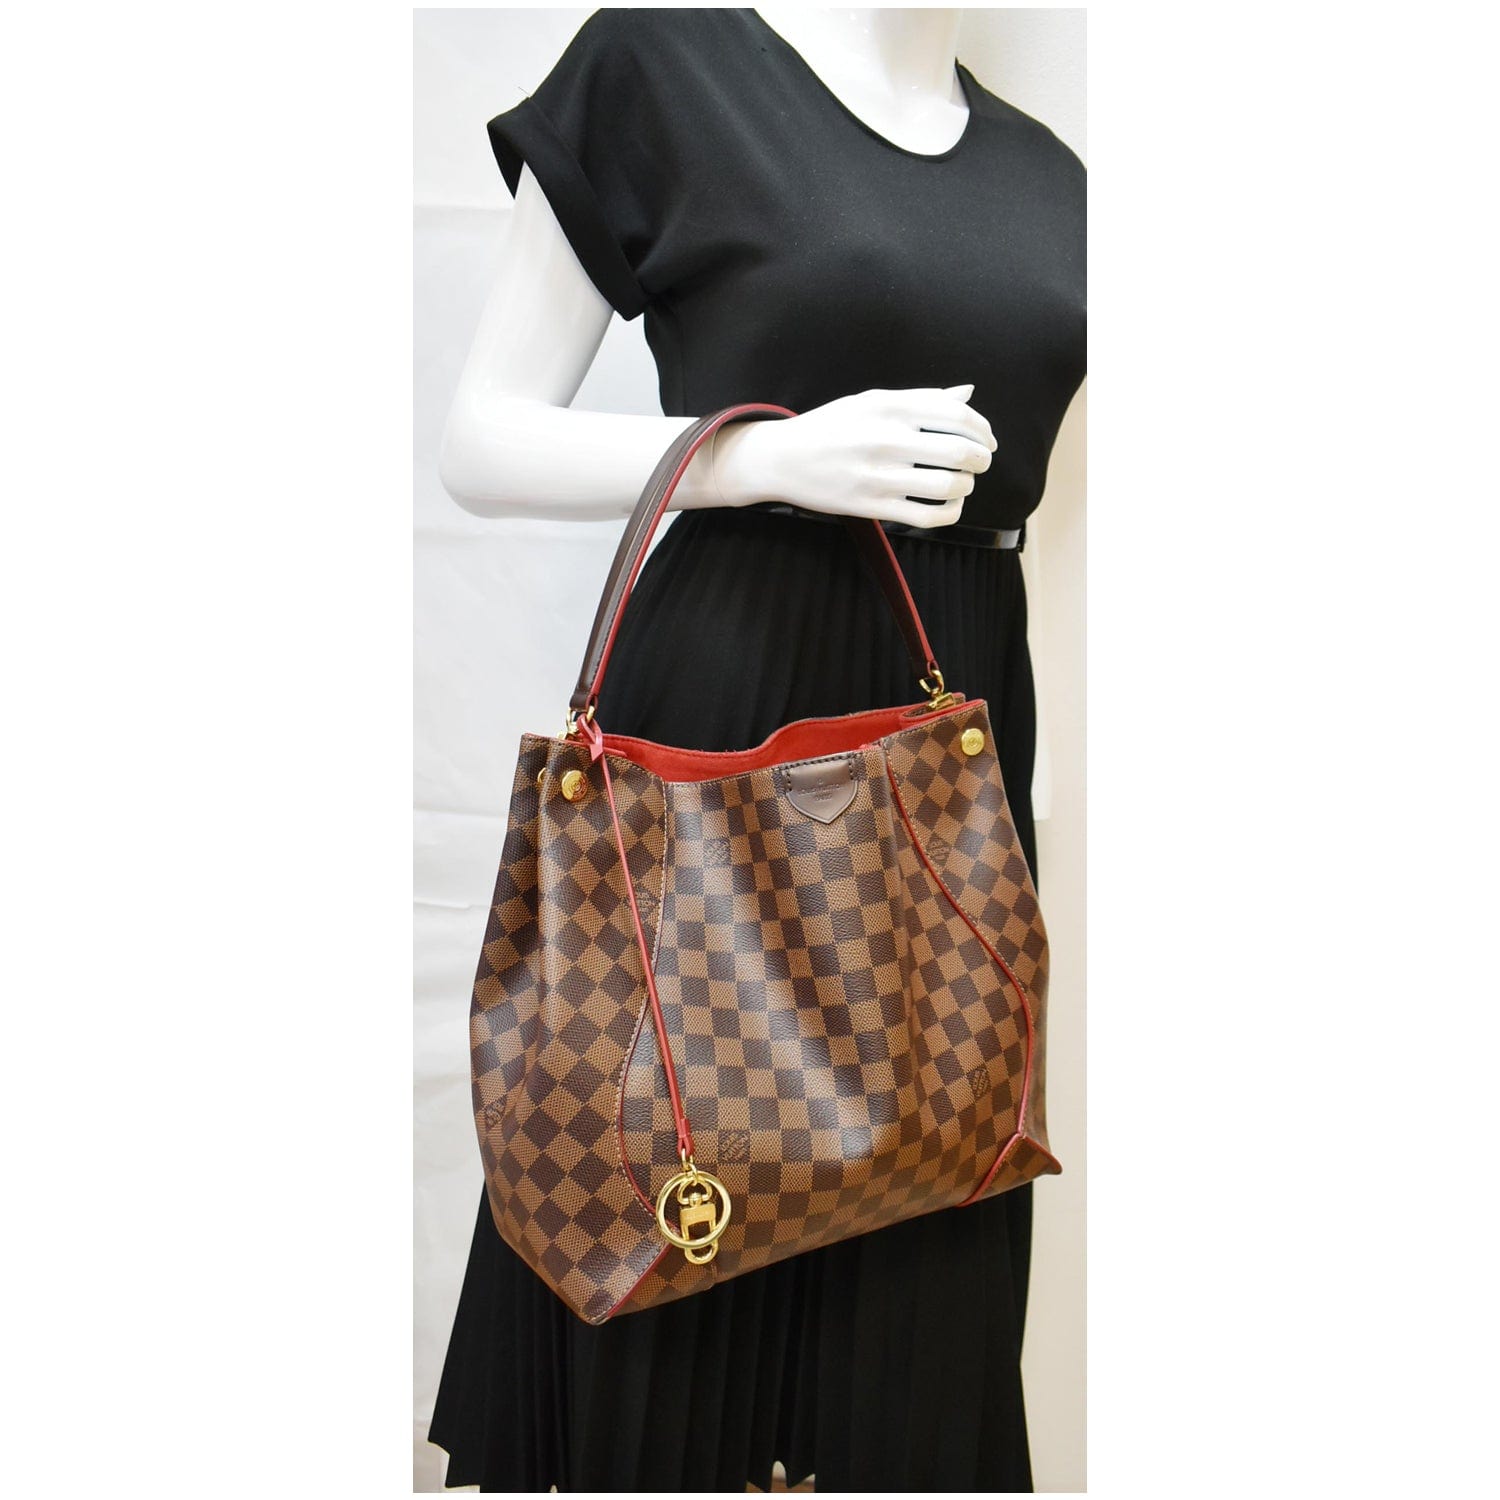 Handbag Caissa Louis Vuitton Cloth for woman